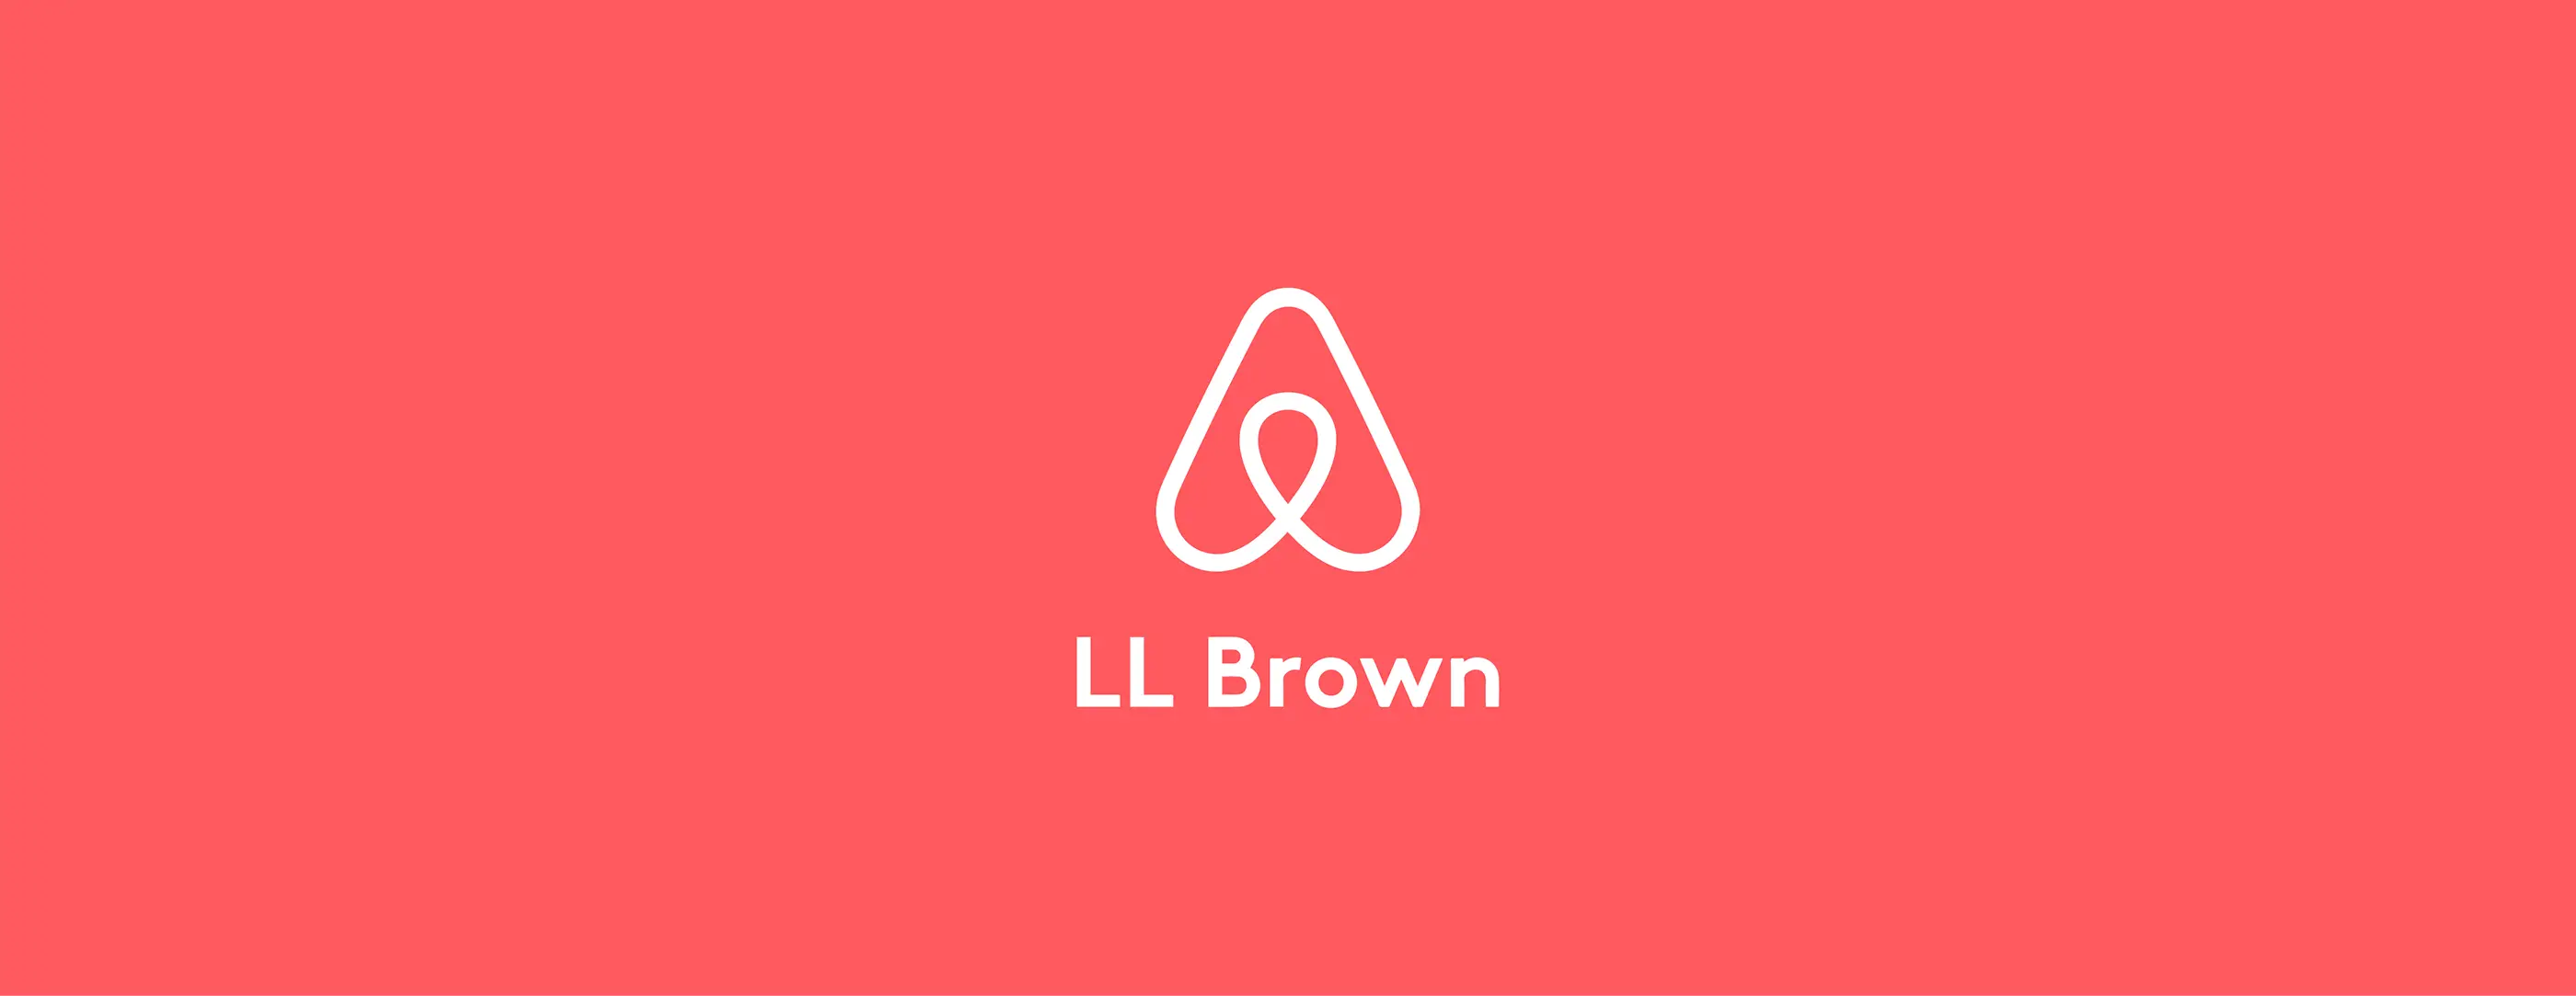 wersm-logo-font-airbnb-LL-Brown